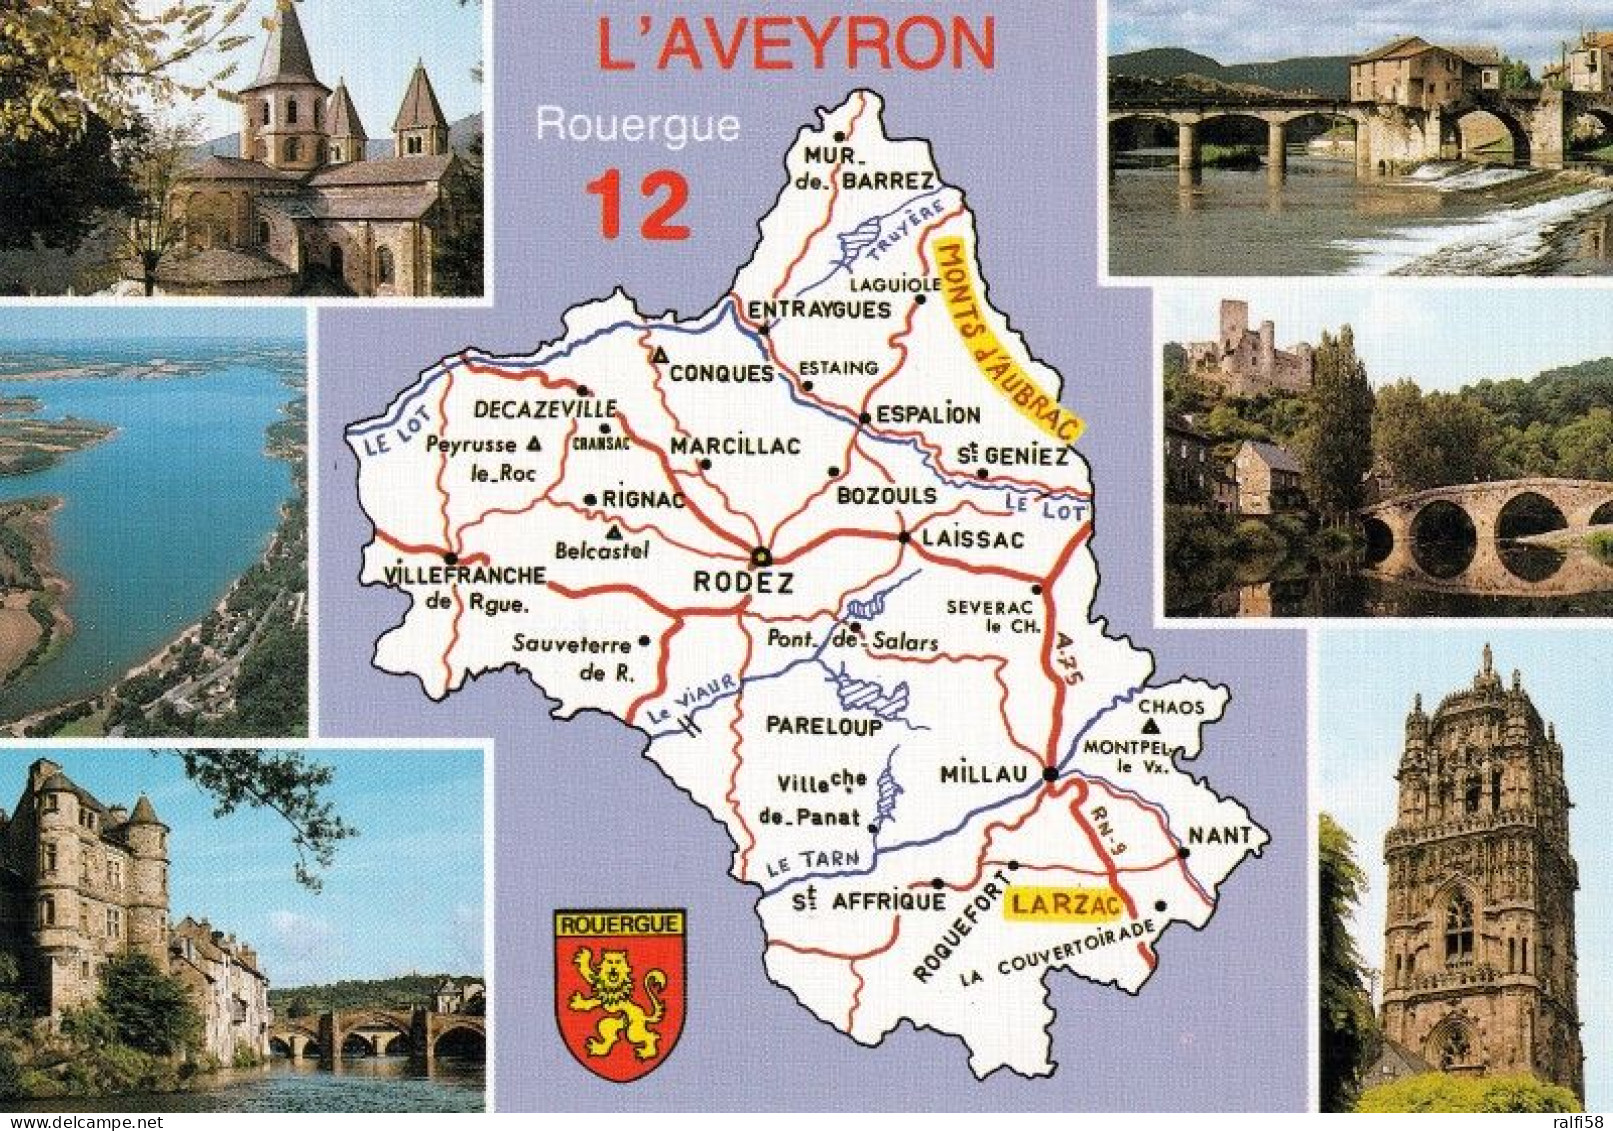 2 Map Of France * 2 Ansichtskarten Mit Der Landkarte - Département Aveyron Und Sehenswürdigkeiten - Ordnungsnummer 12 * - Mapas